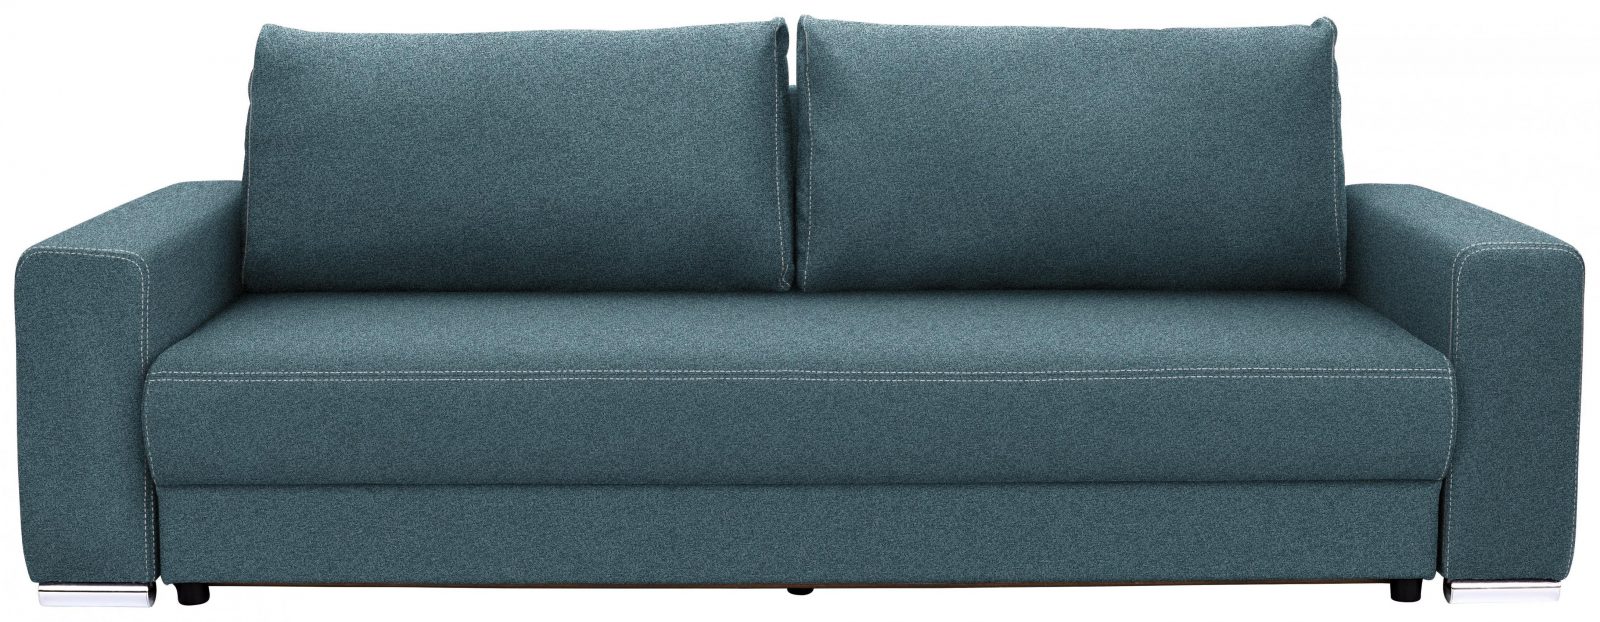 Bigsofa In Hellblau Mit Bettkasten von Big Sofa Mit Schlaffunktion Und Bettkasten Bild